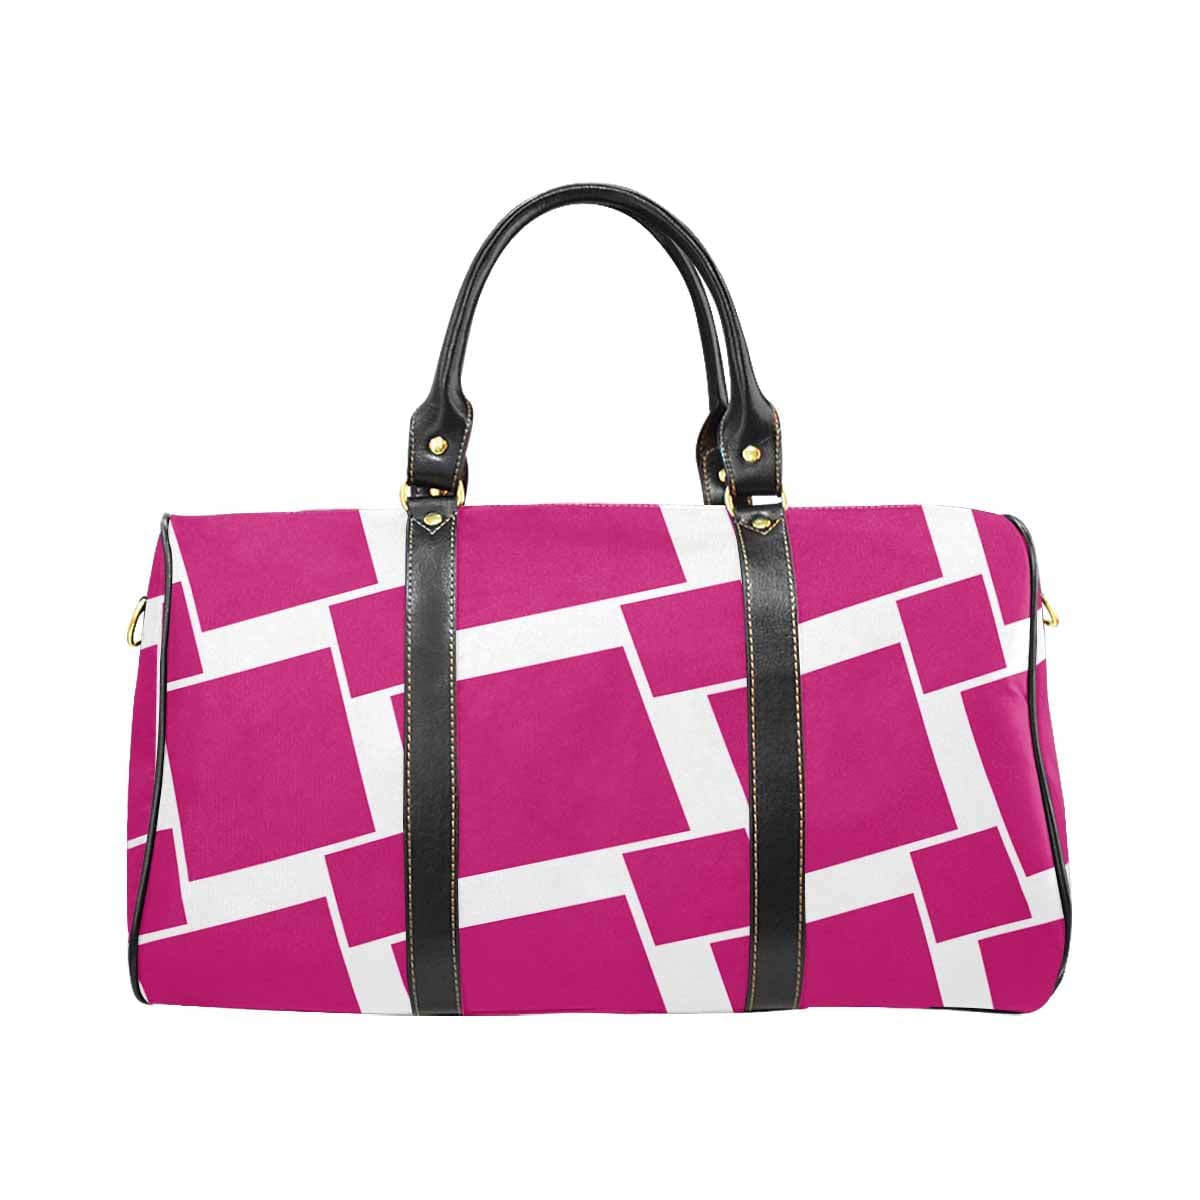 Travel Bag Adjustable Shoulder Strap Carry On Bag Fushia Pink - Bags | Travel